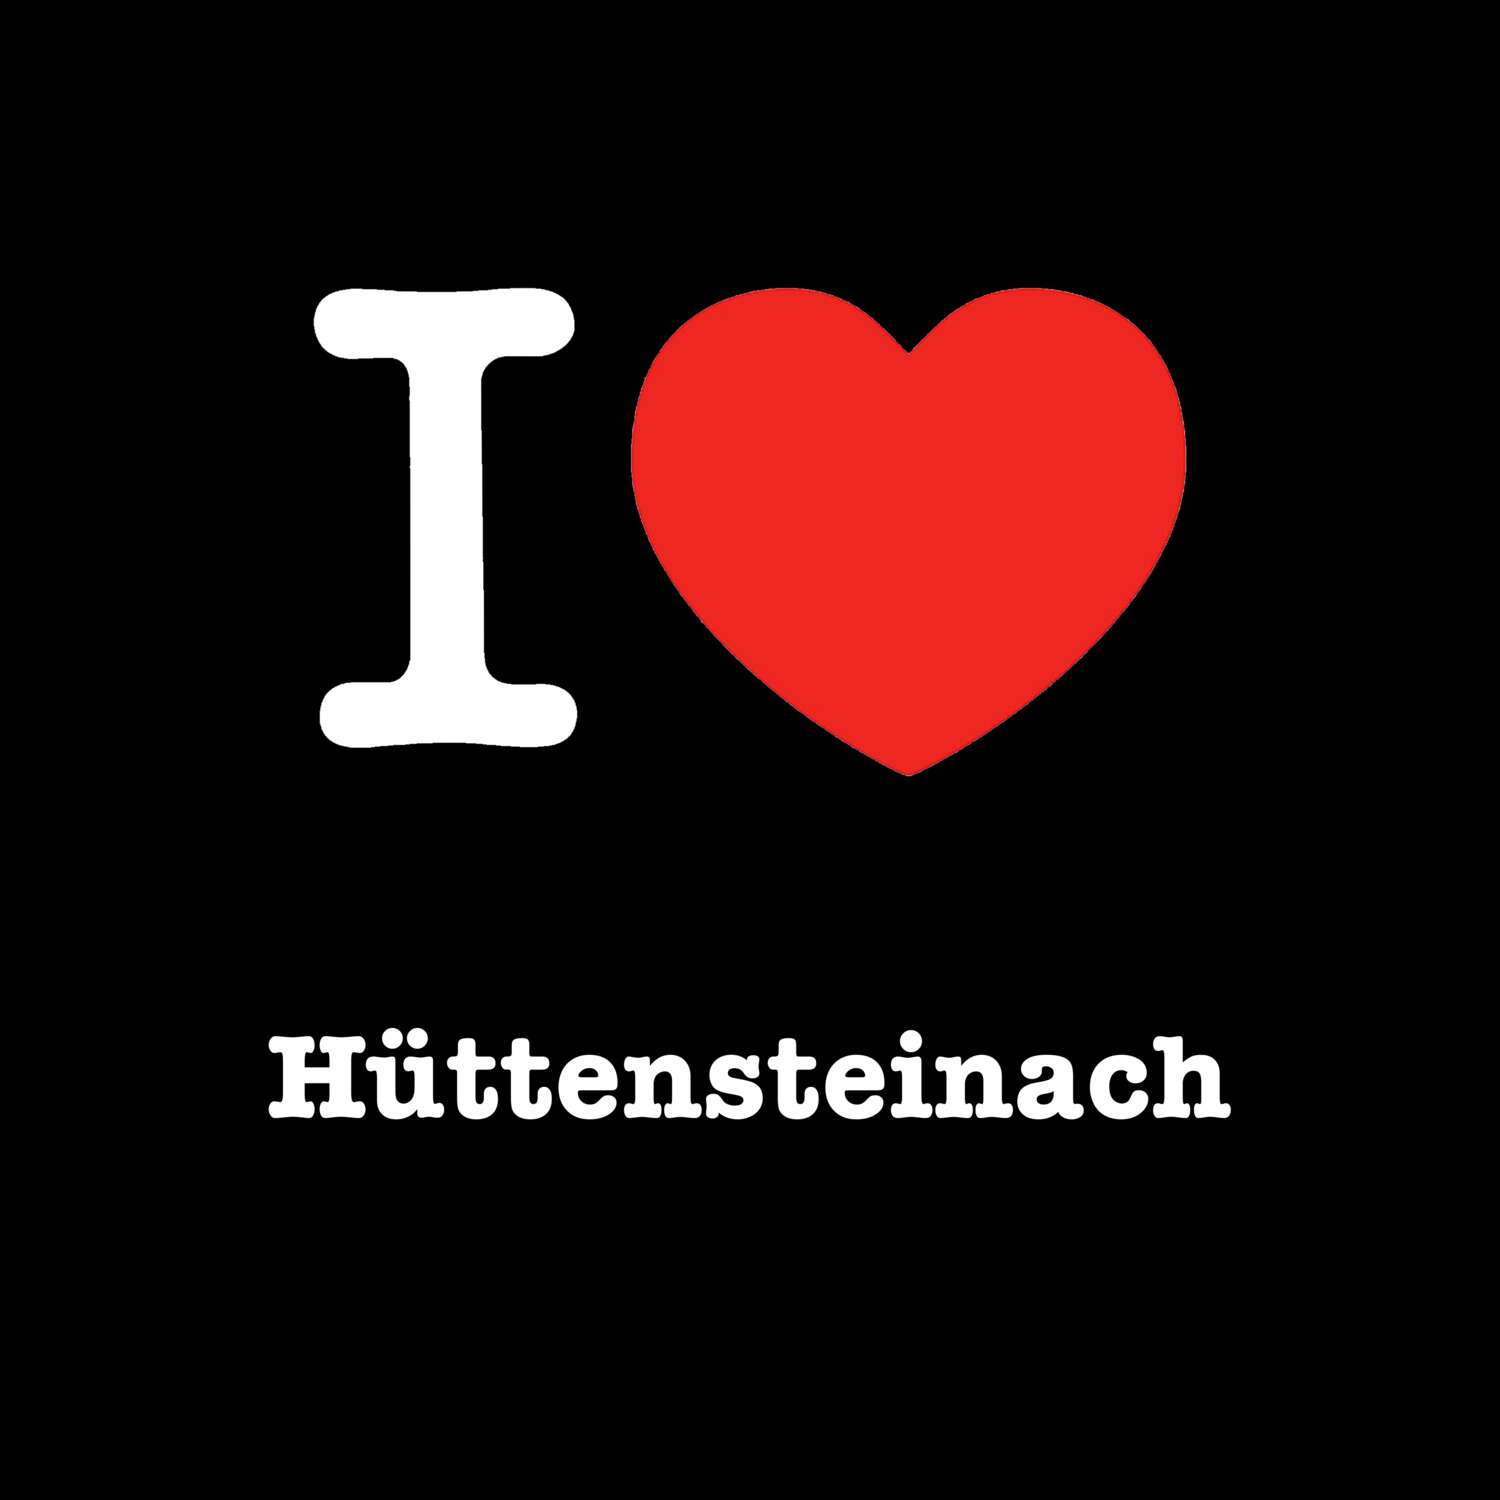 Hüttensteinach T-Shirt »I love«